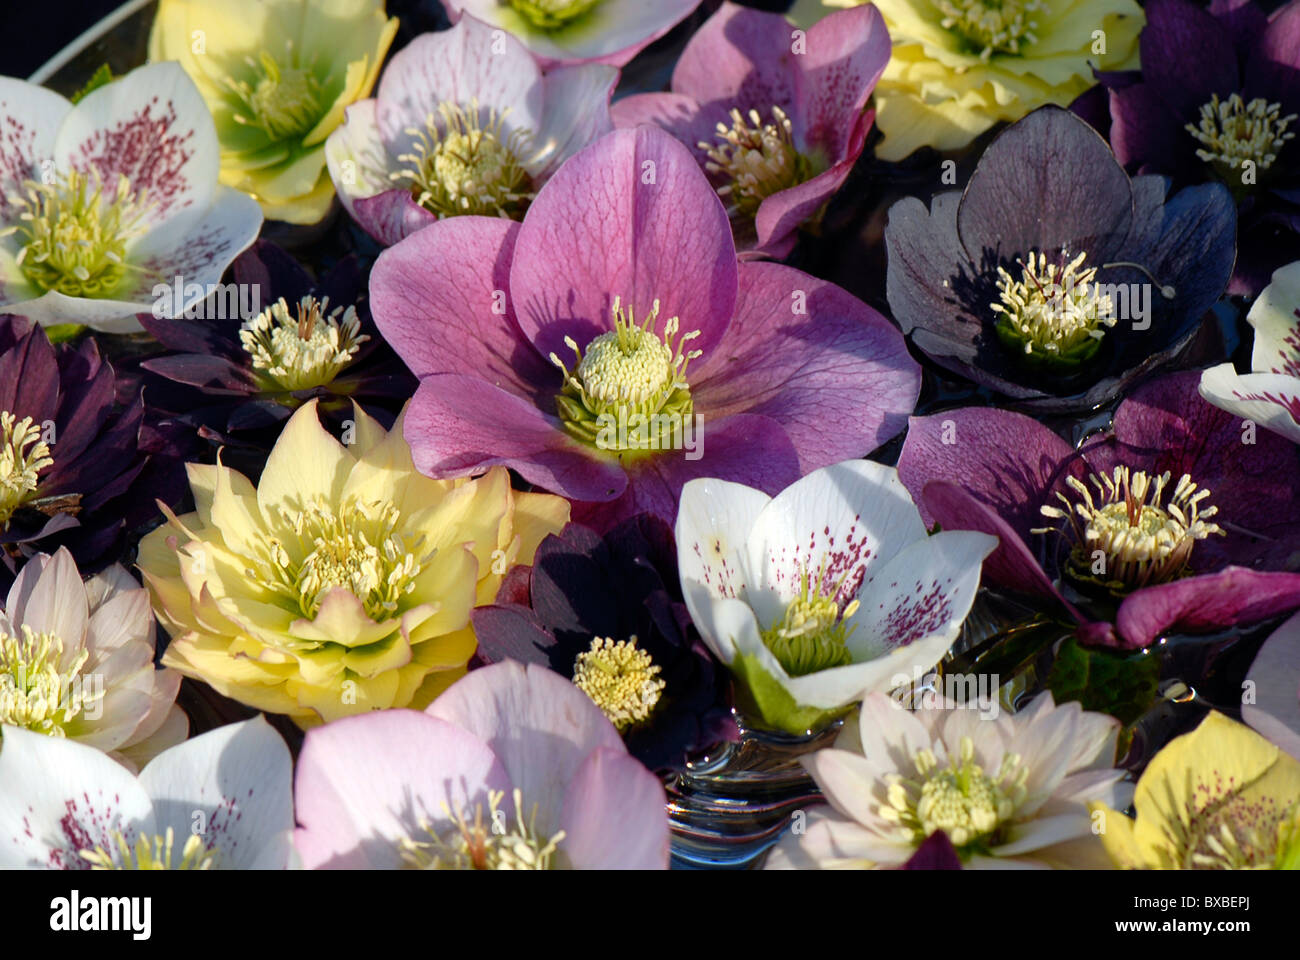 Eine Auswahl von Frühling blühende Nieswurz Blumen auch als Fastenzeit Rosen oder Weihnachten Rosen bekannt Stockfoto